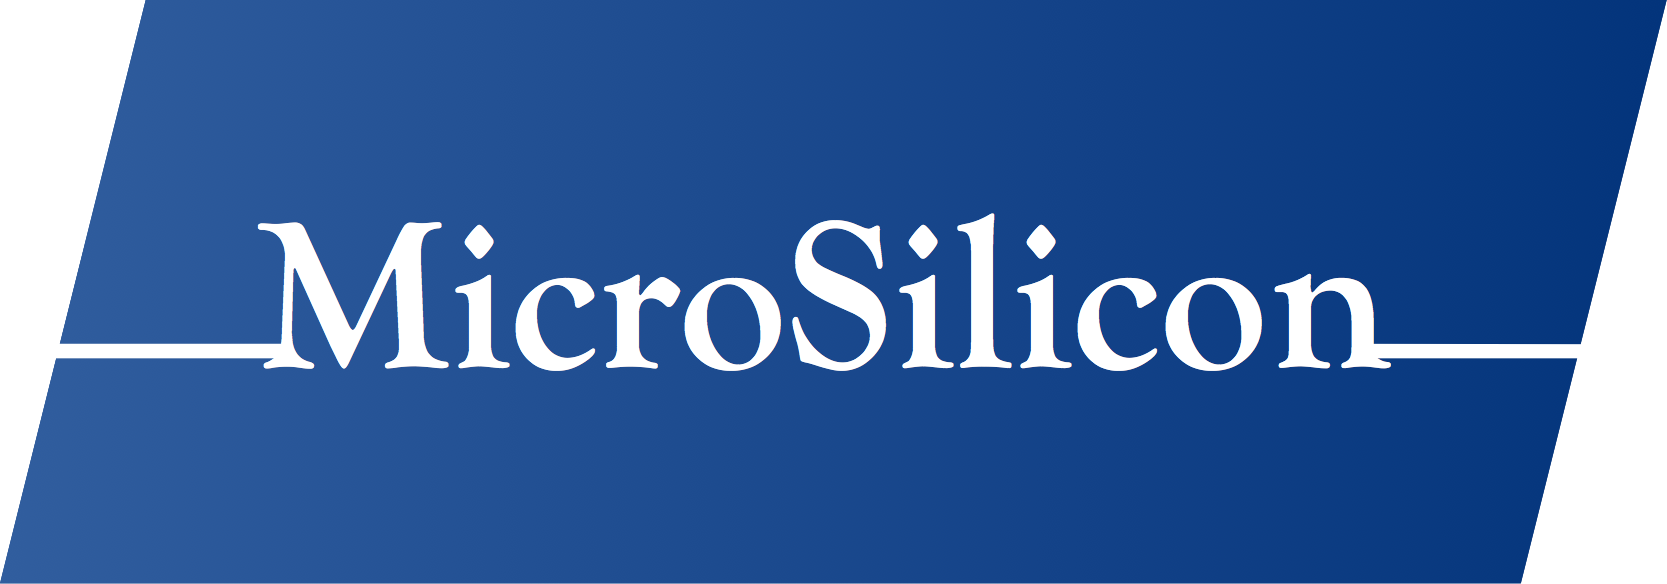 MicroSilicon logo